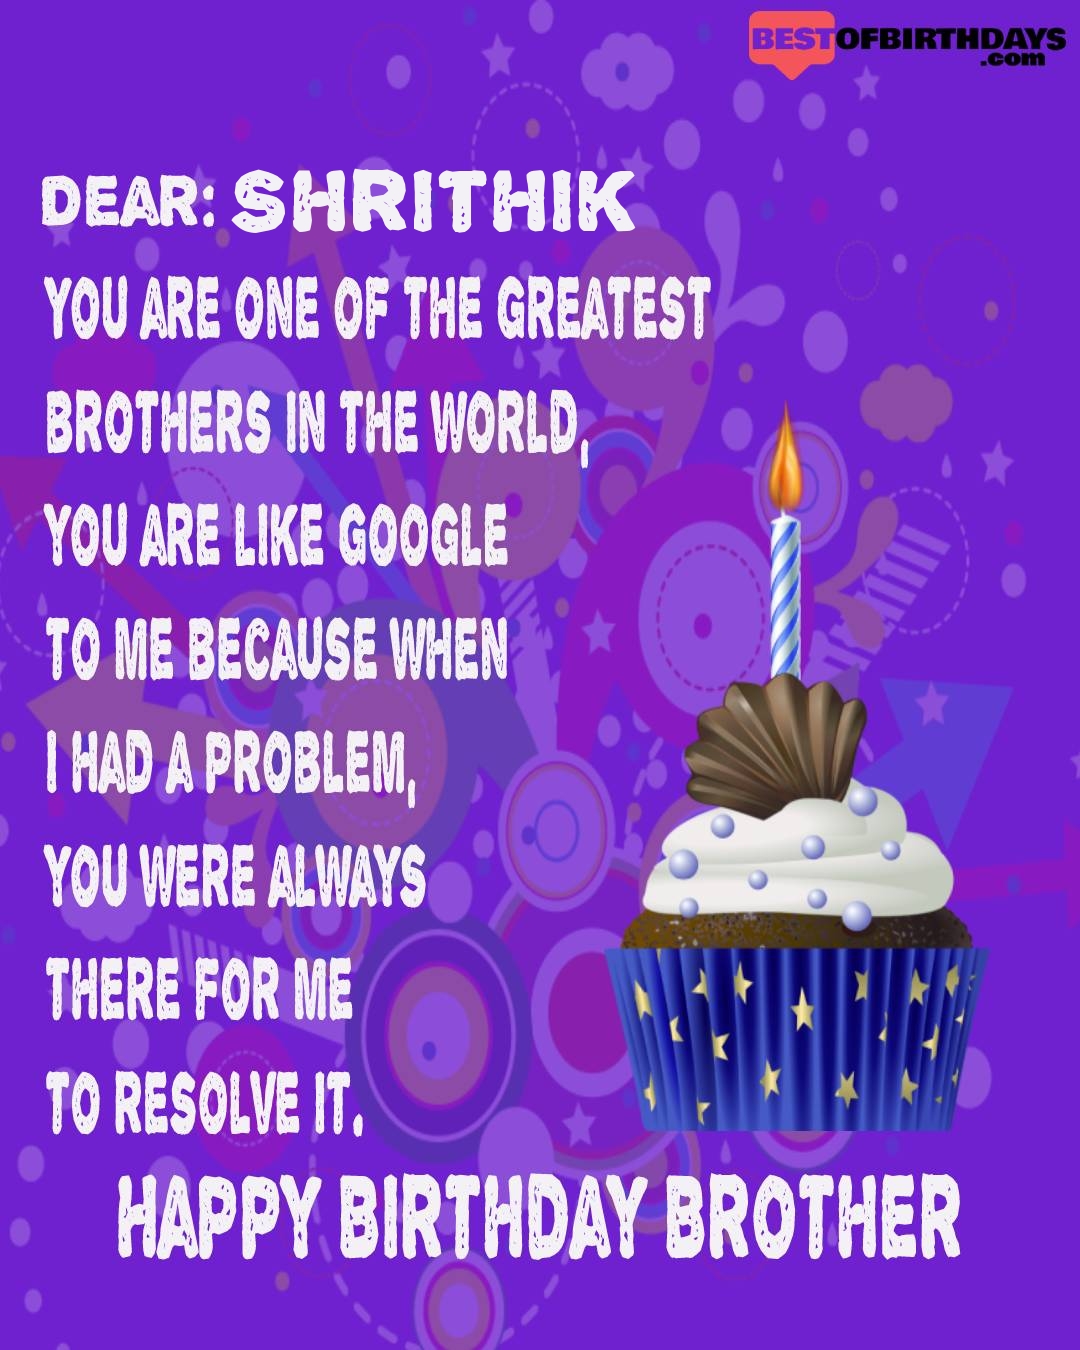 Happy birthday shrithik bhai brother bro